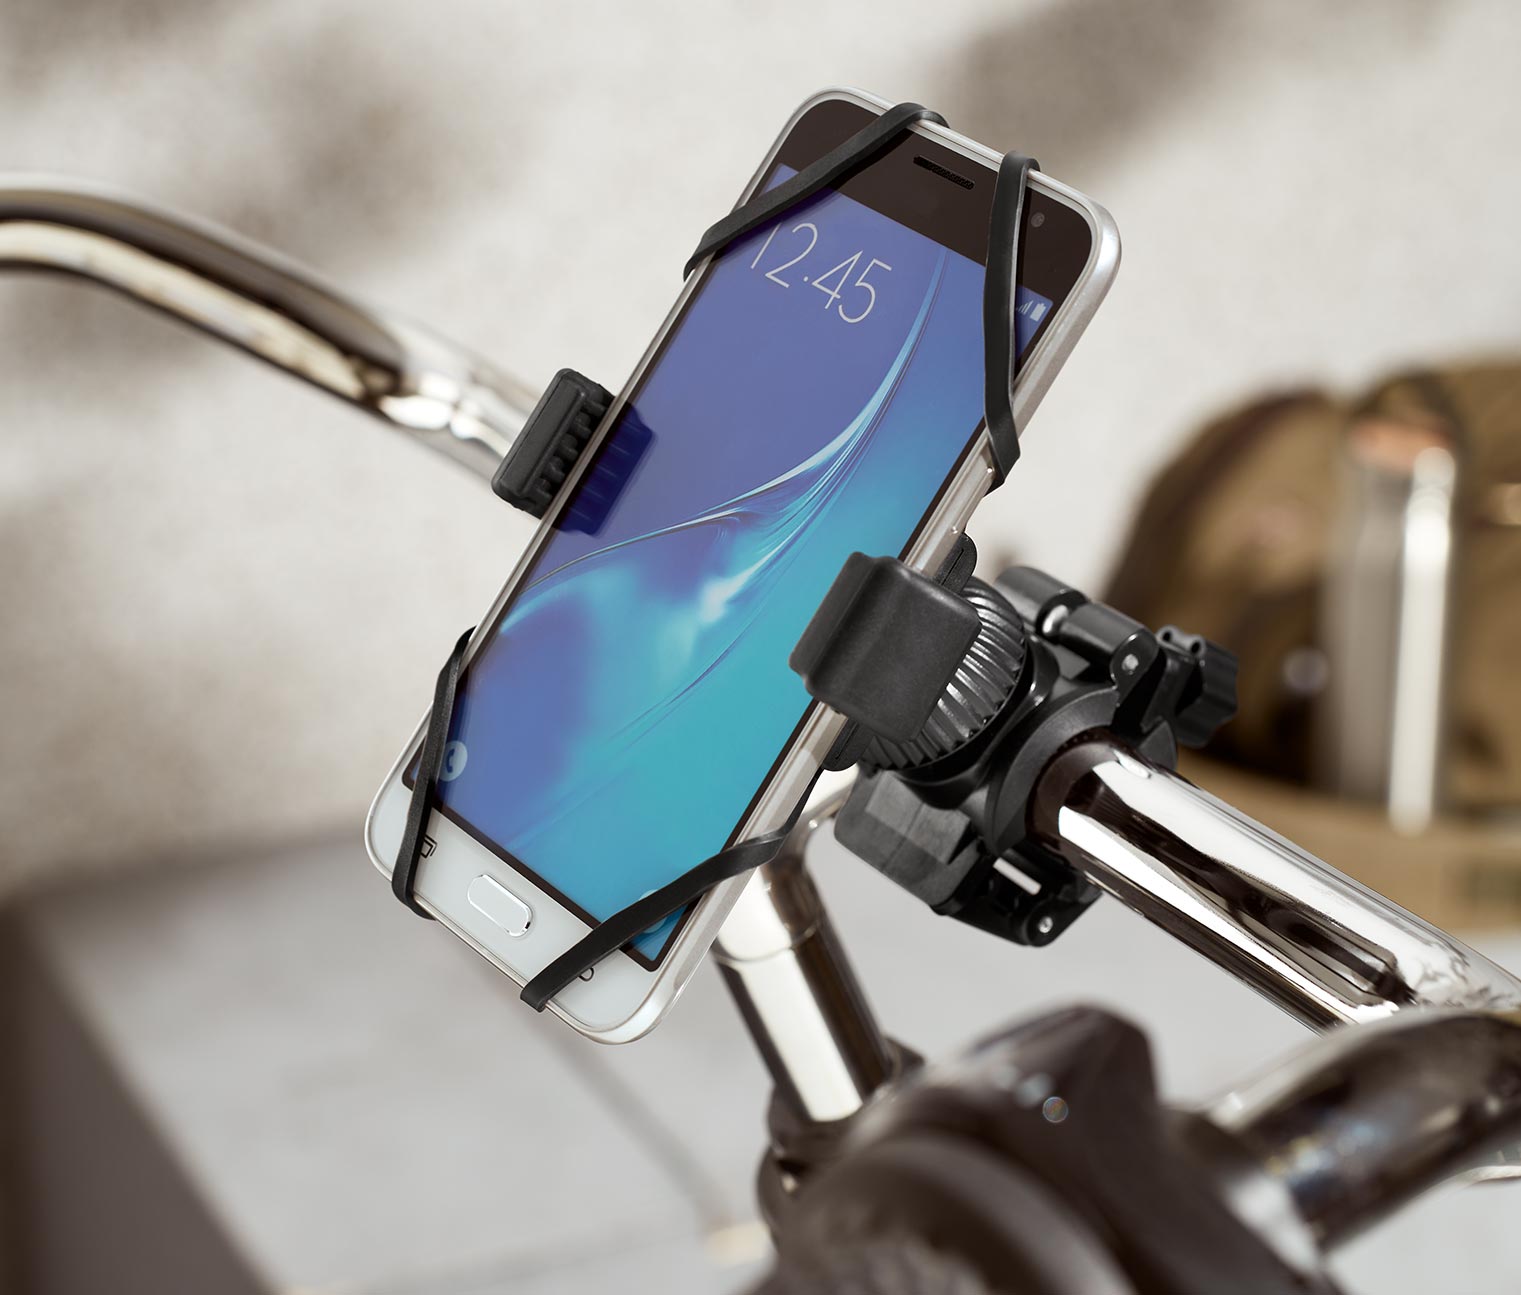 Fahrrad Halterung Motorrad Halter Handy Wasserfest für Samsung Galaxy S7  Edge